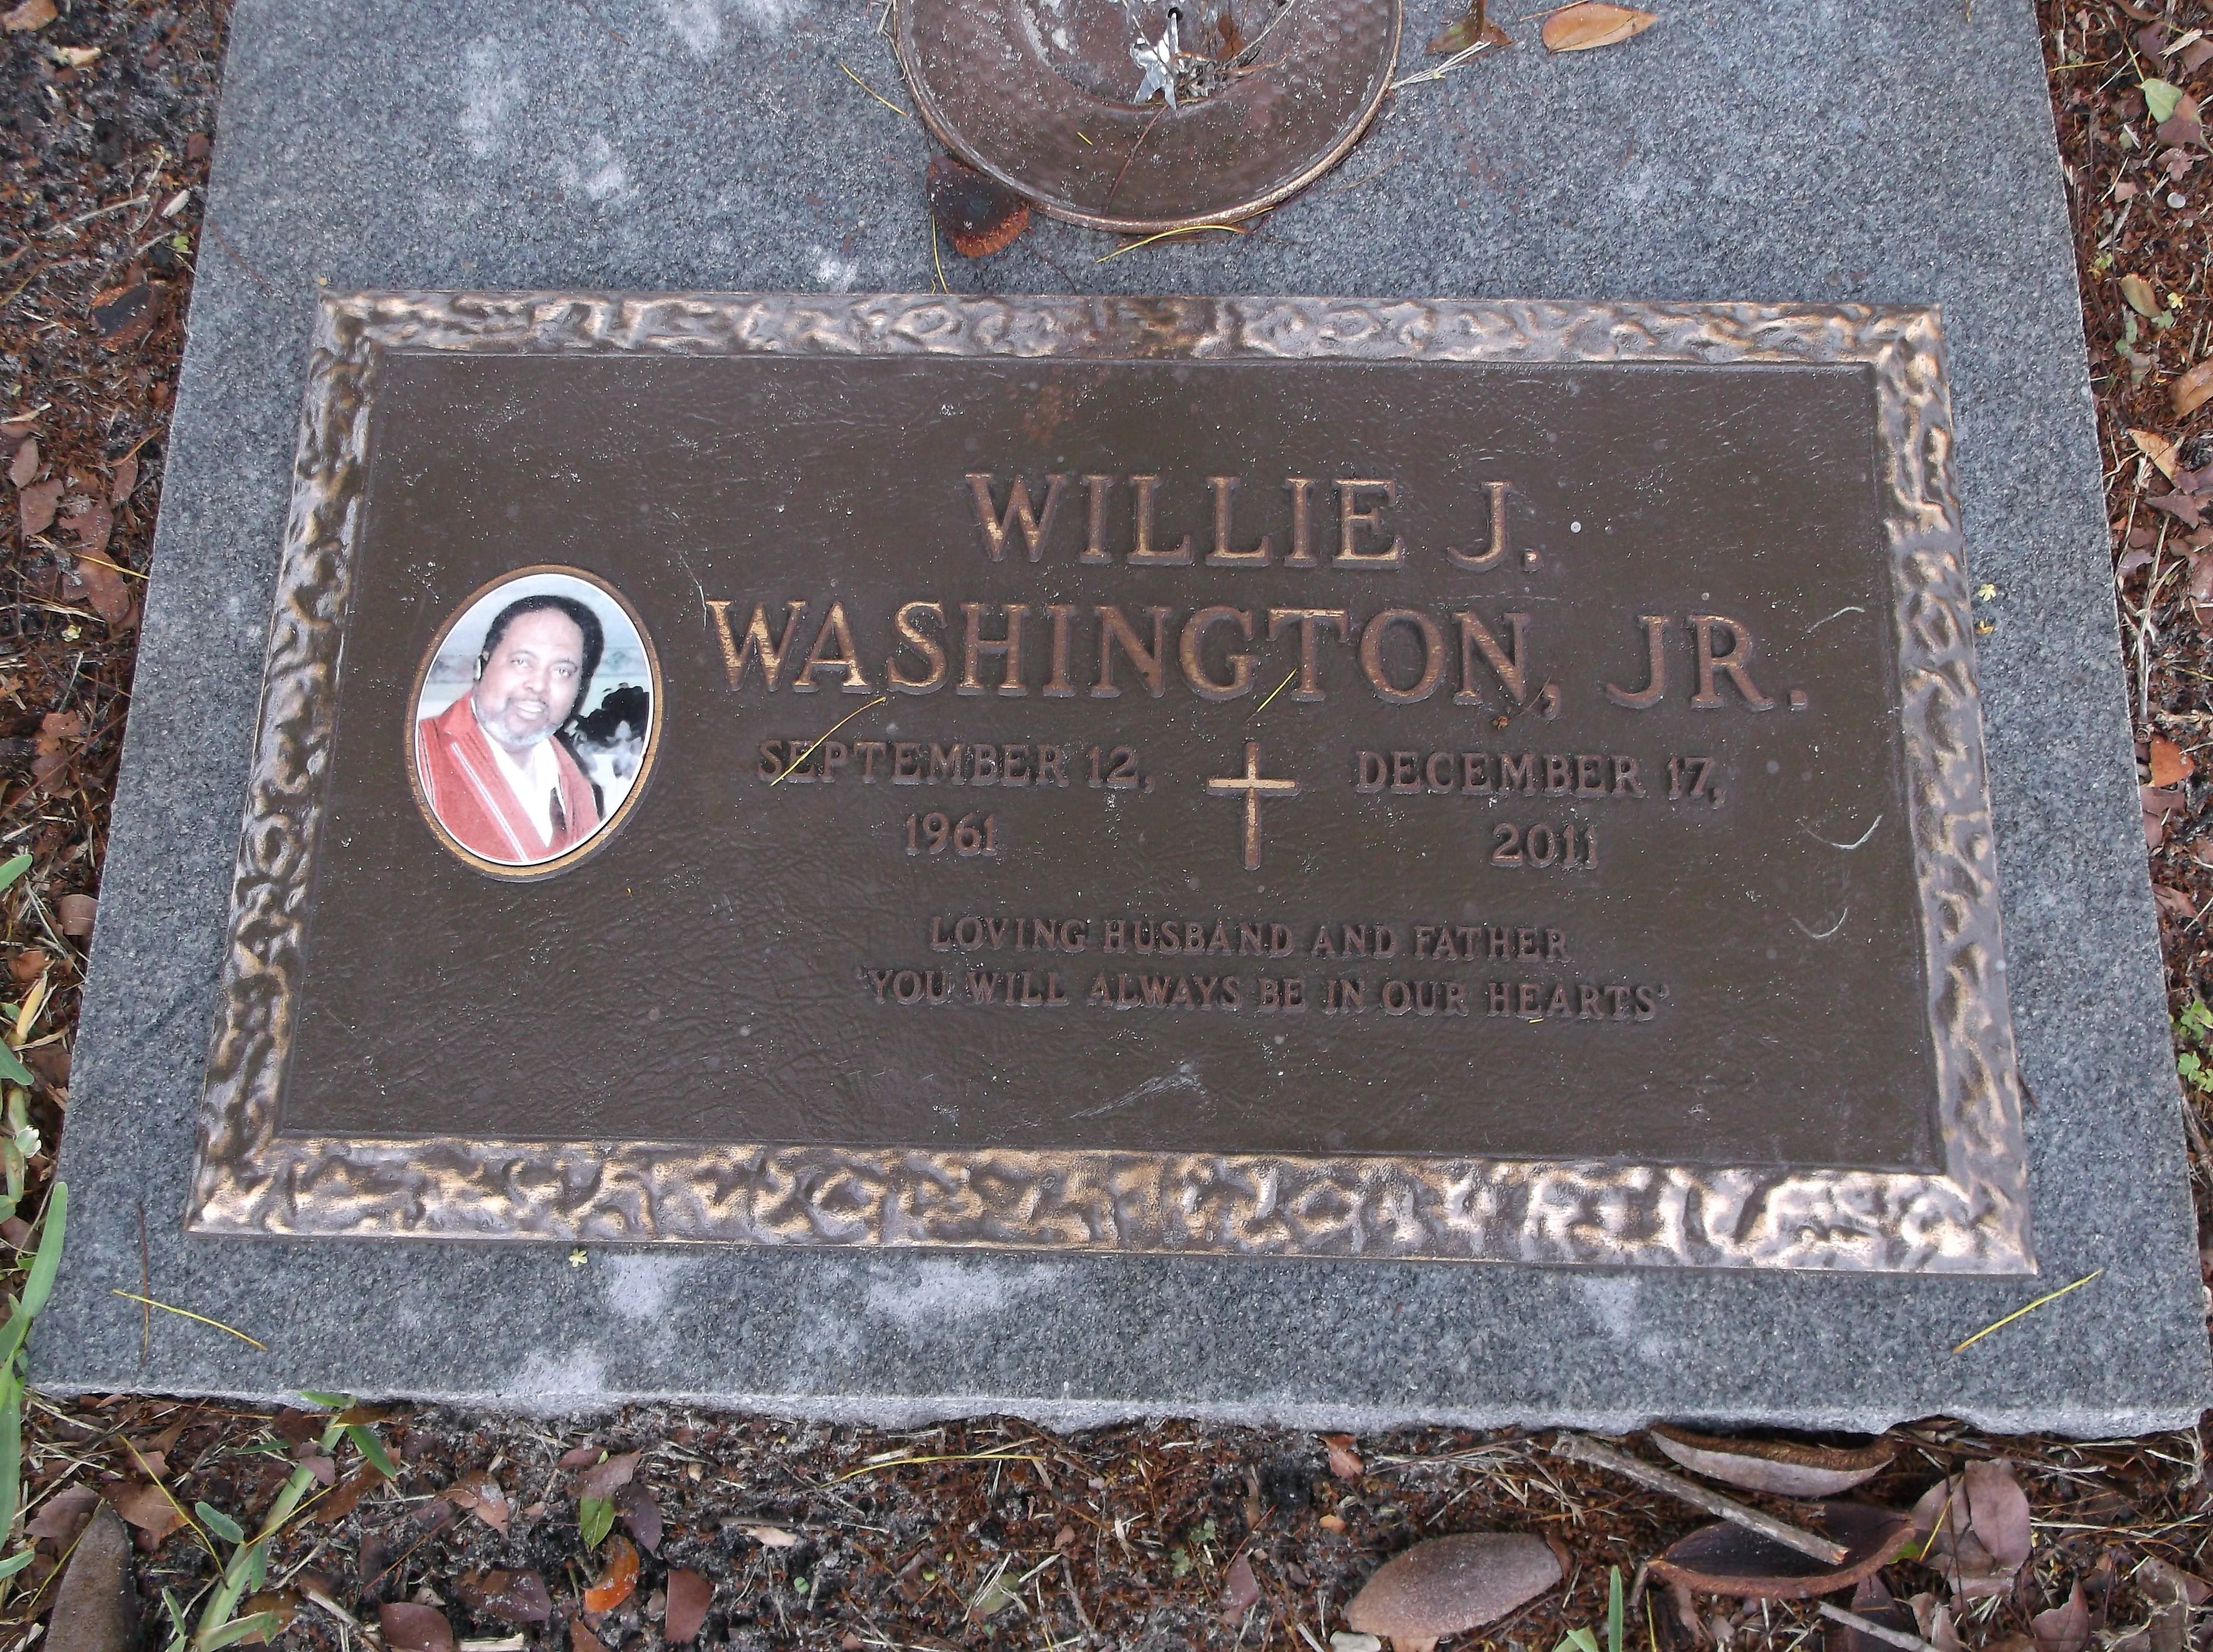 Willie J Washington, Jr